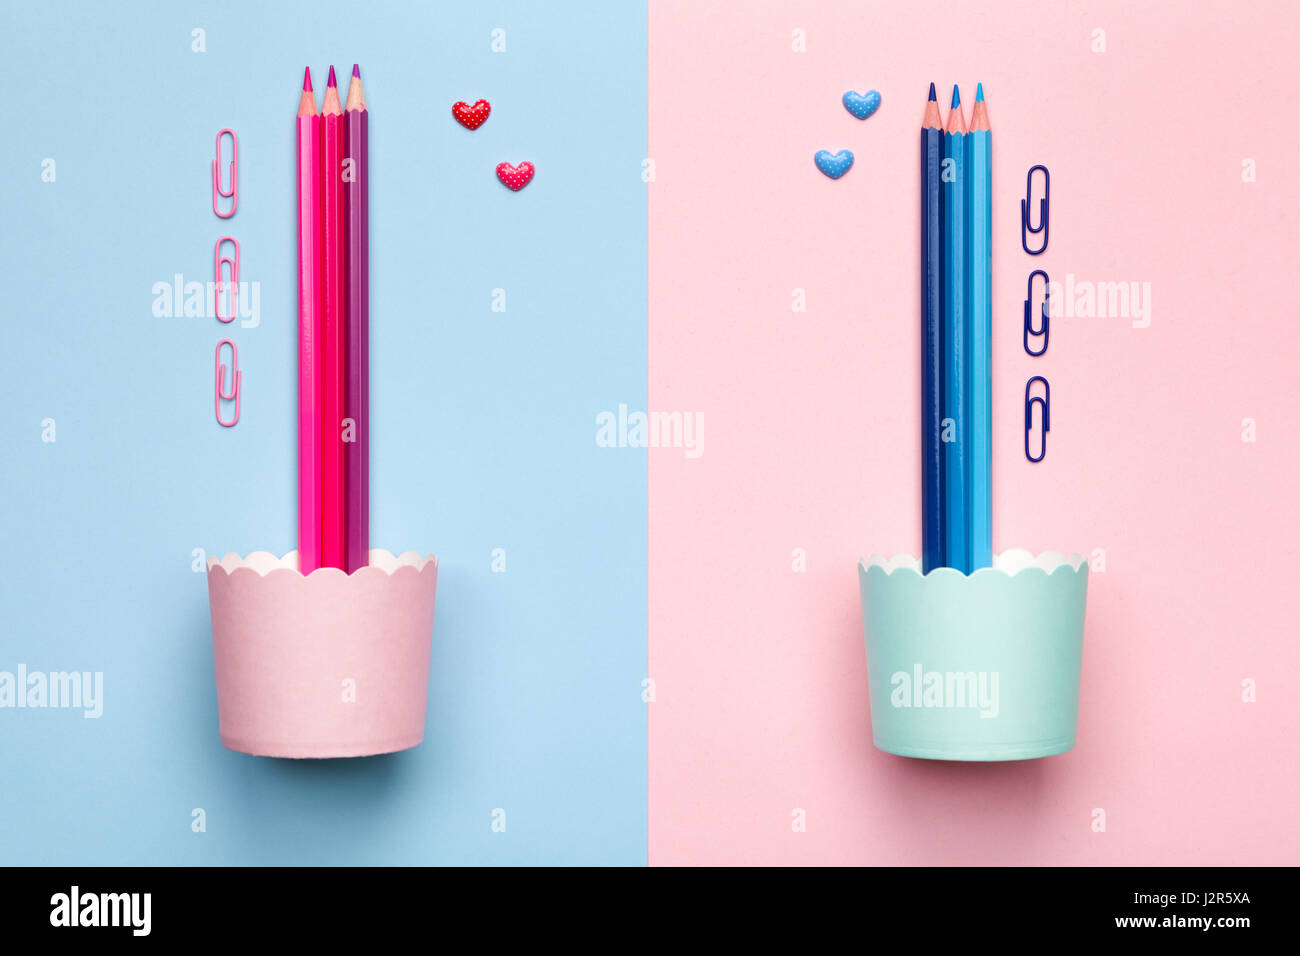 Rosa e matite di colore blu su sfondo color pastello. Stile minimal. Lay piatto. Copia dello spazio. Vista superiore Foto Stock